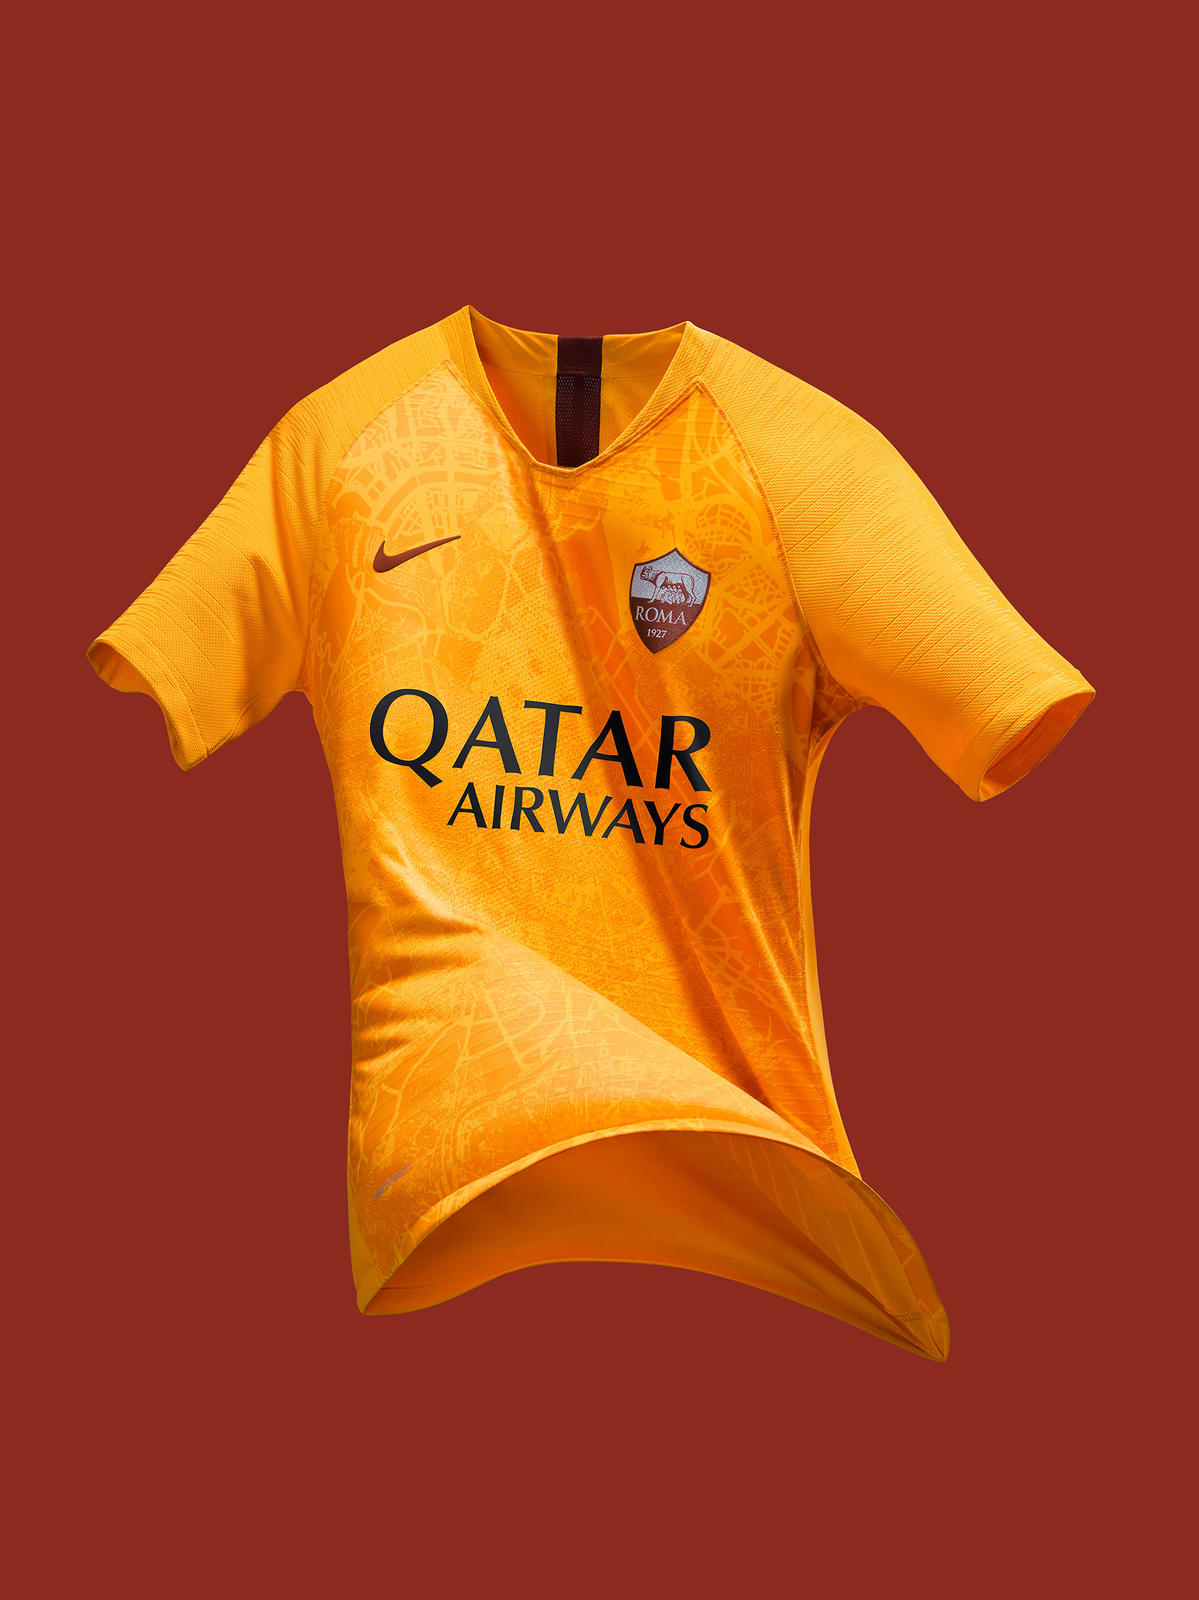 roma yellow jersey